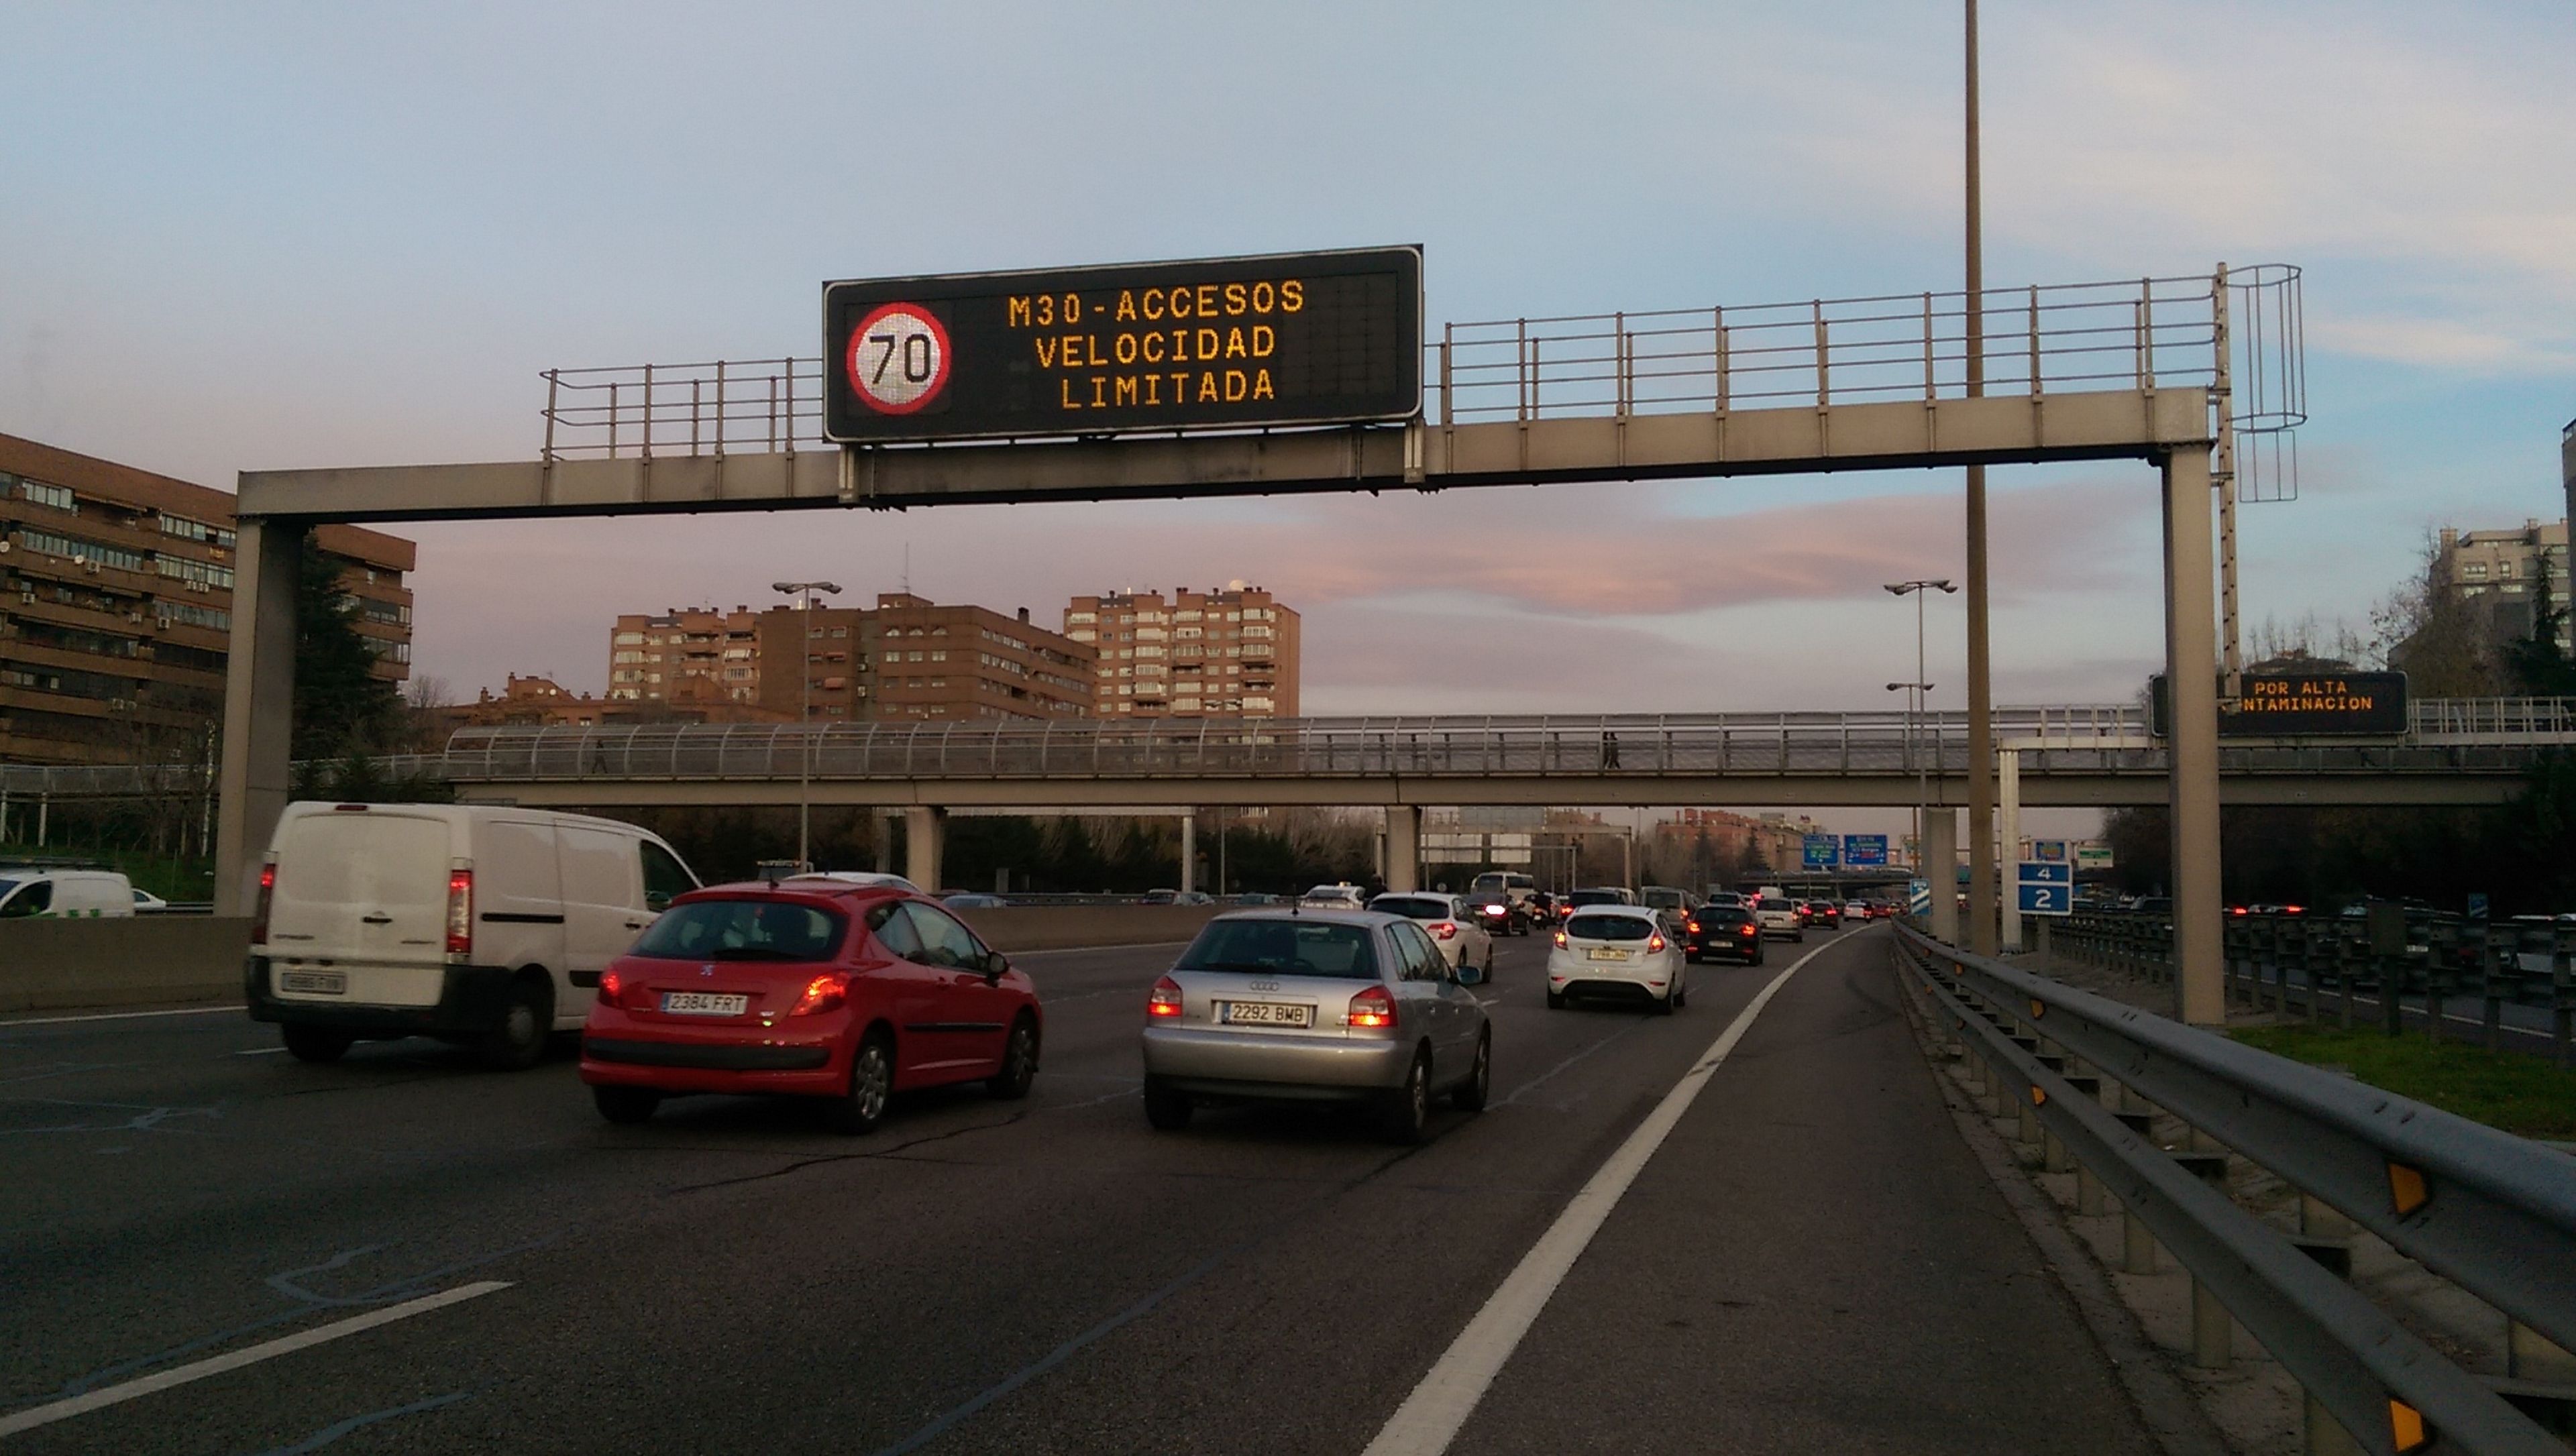 Activado el protocolo de contaminación en Madrid: a 70 km/h